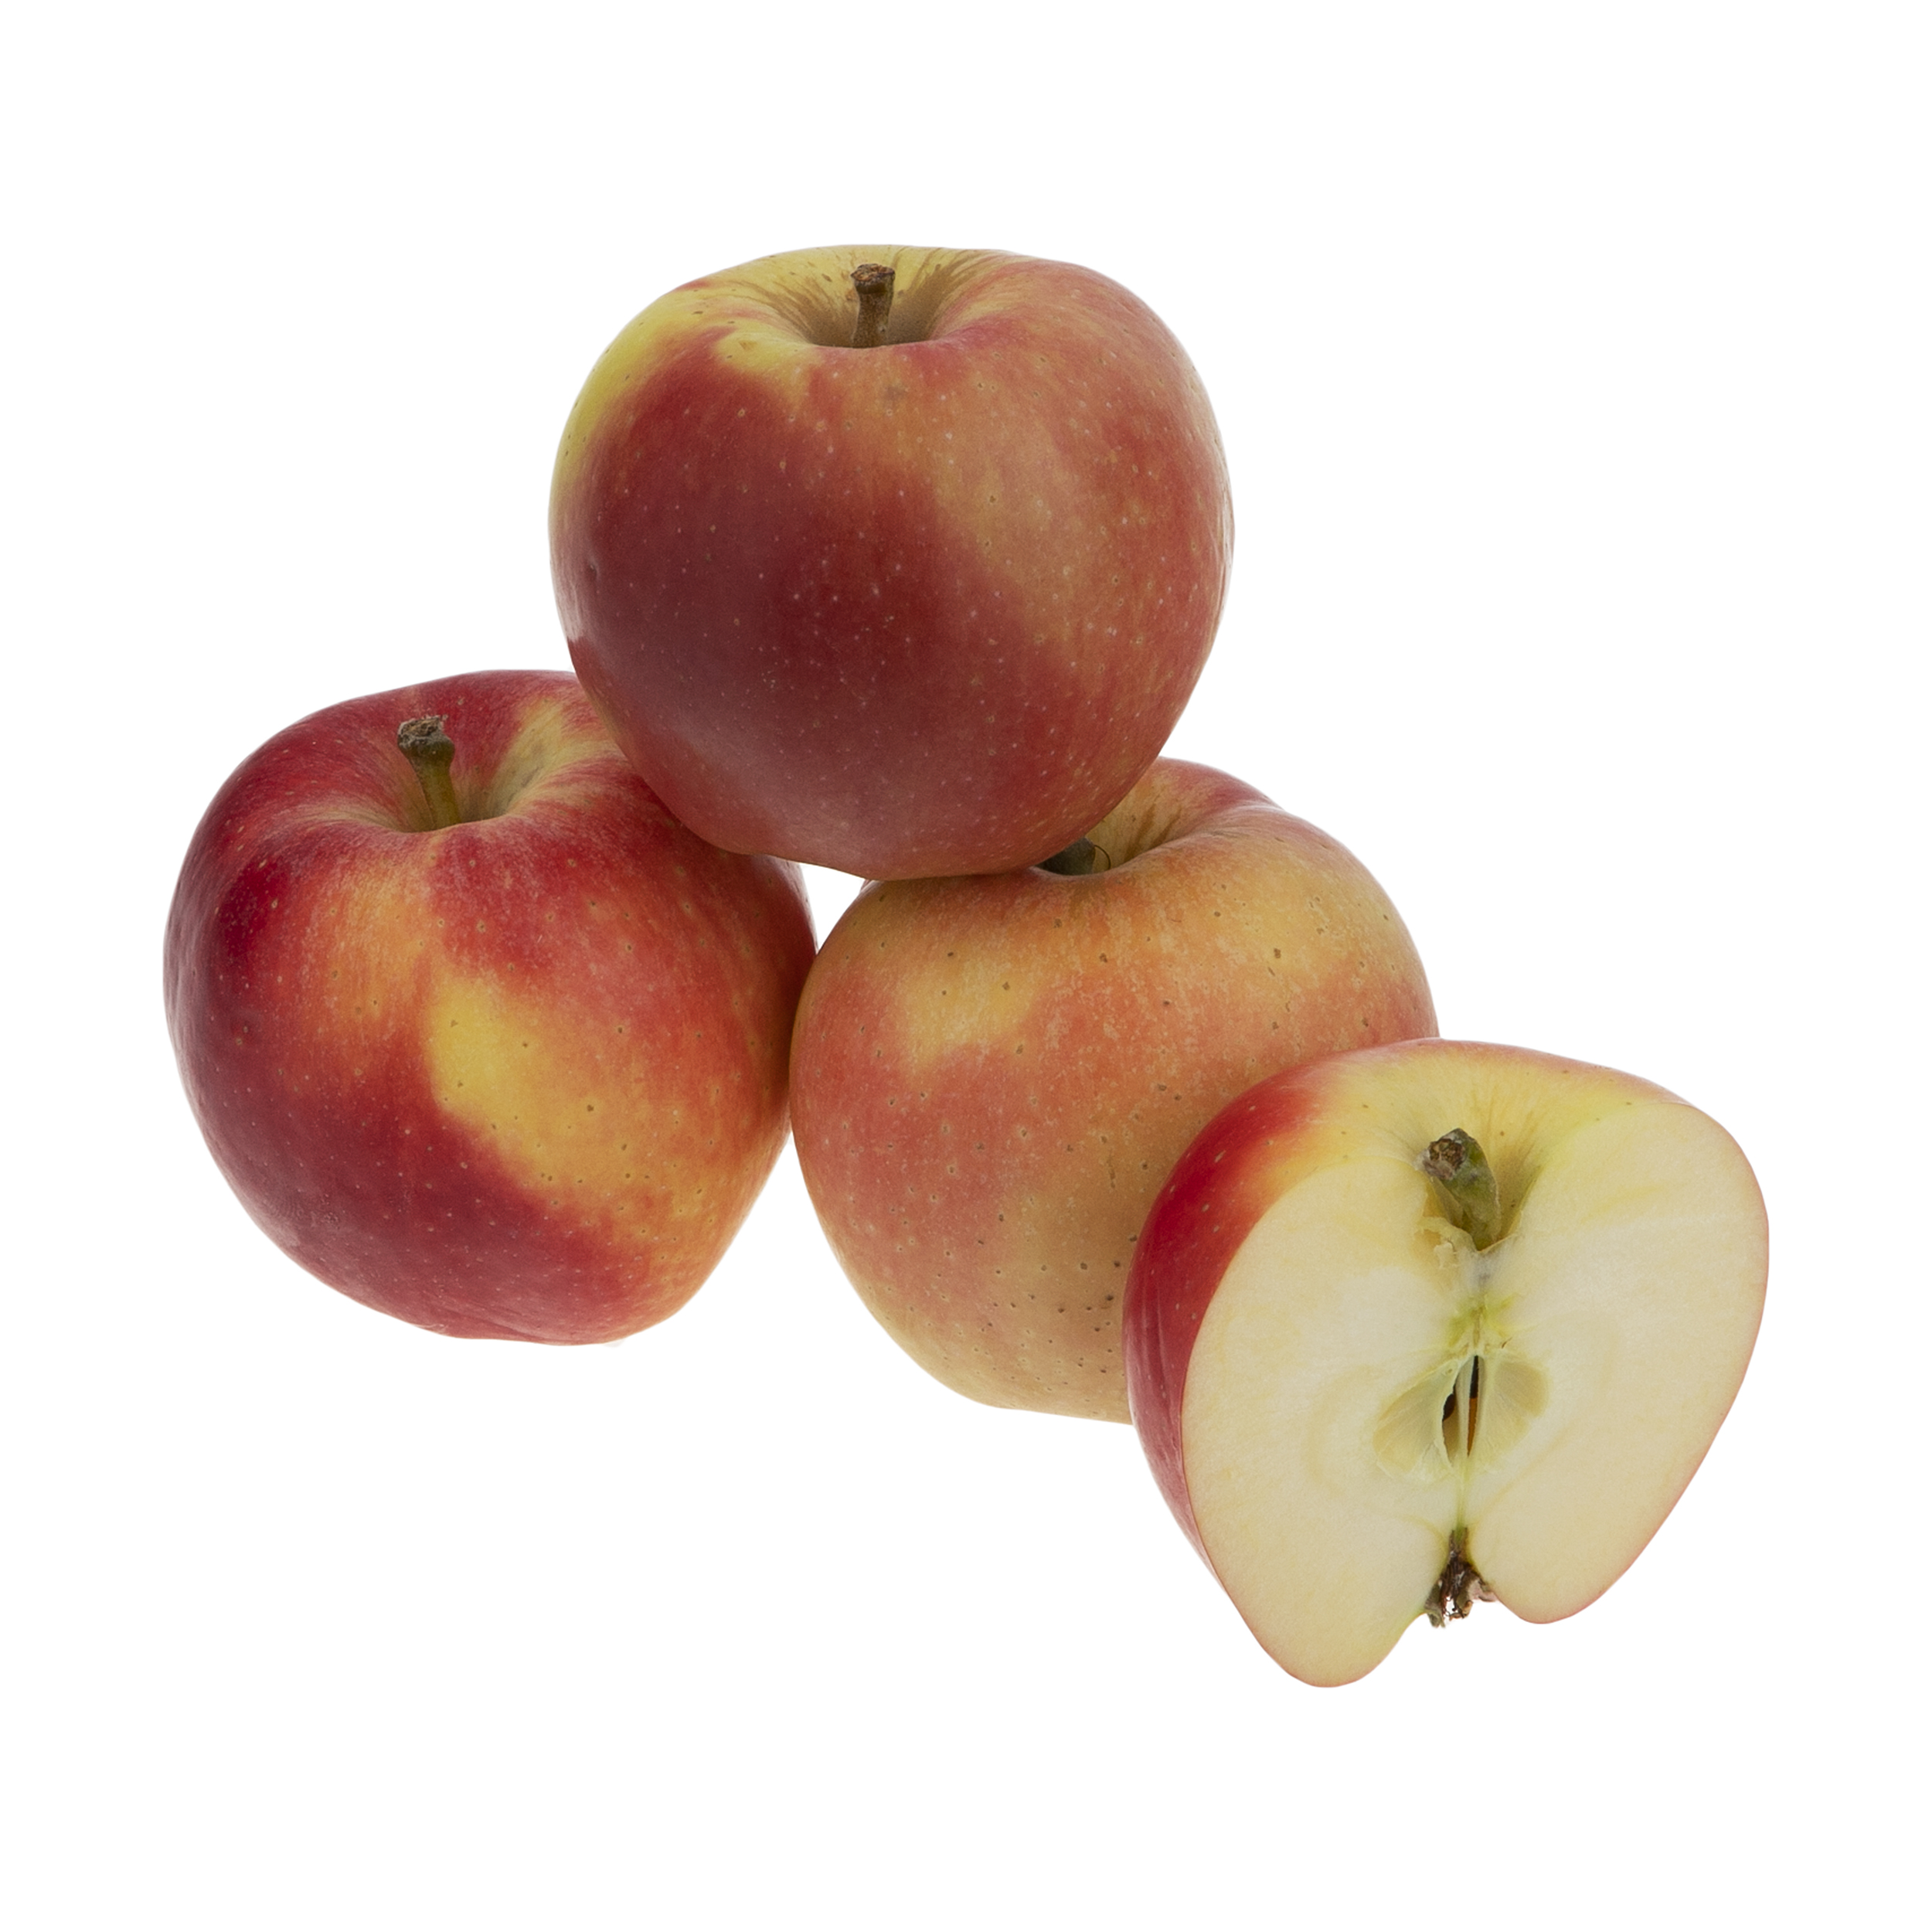 سیب قرمز میوکات - 1 کیلوگرم